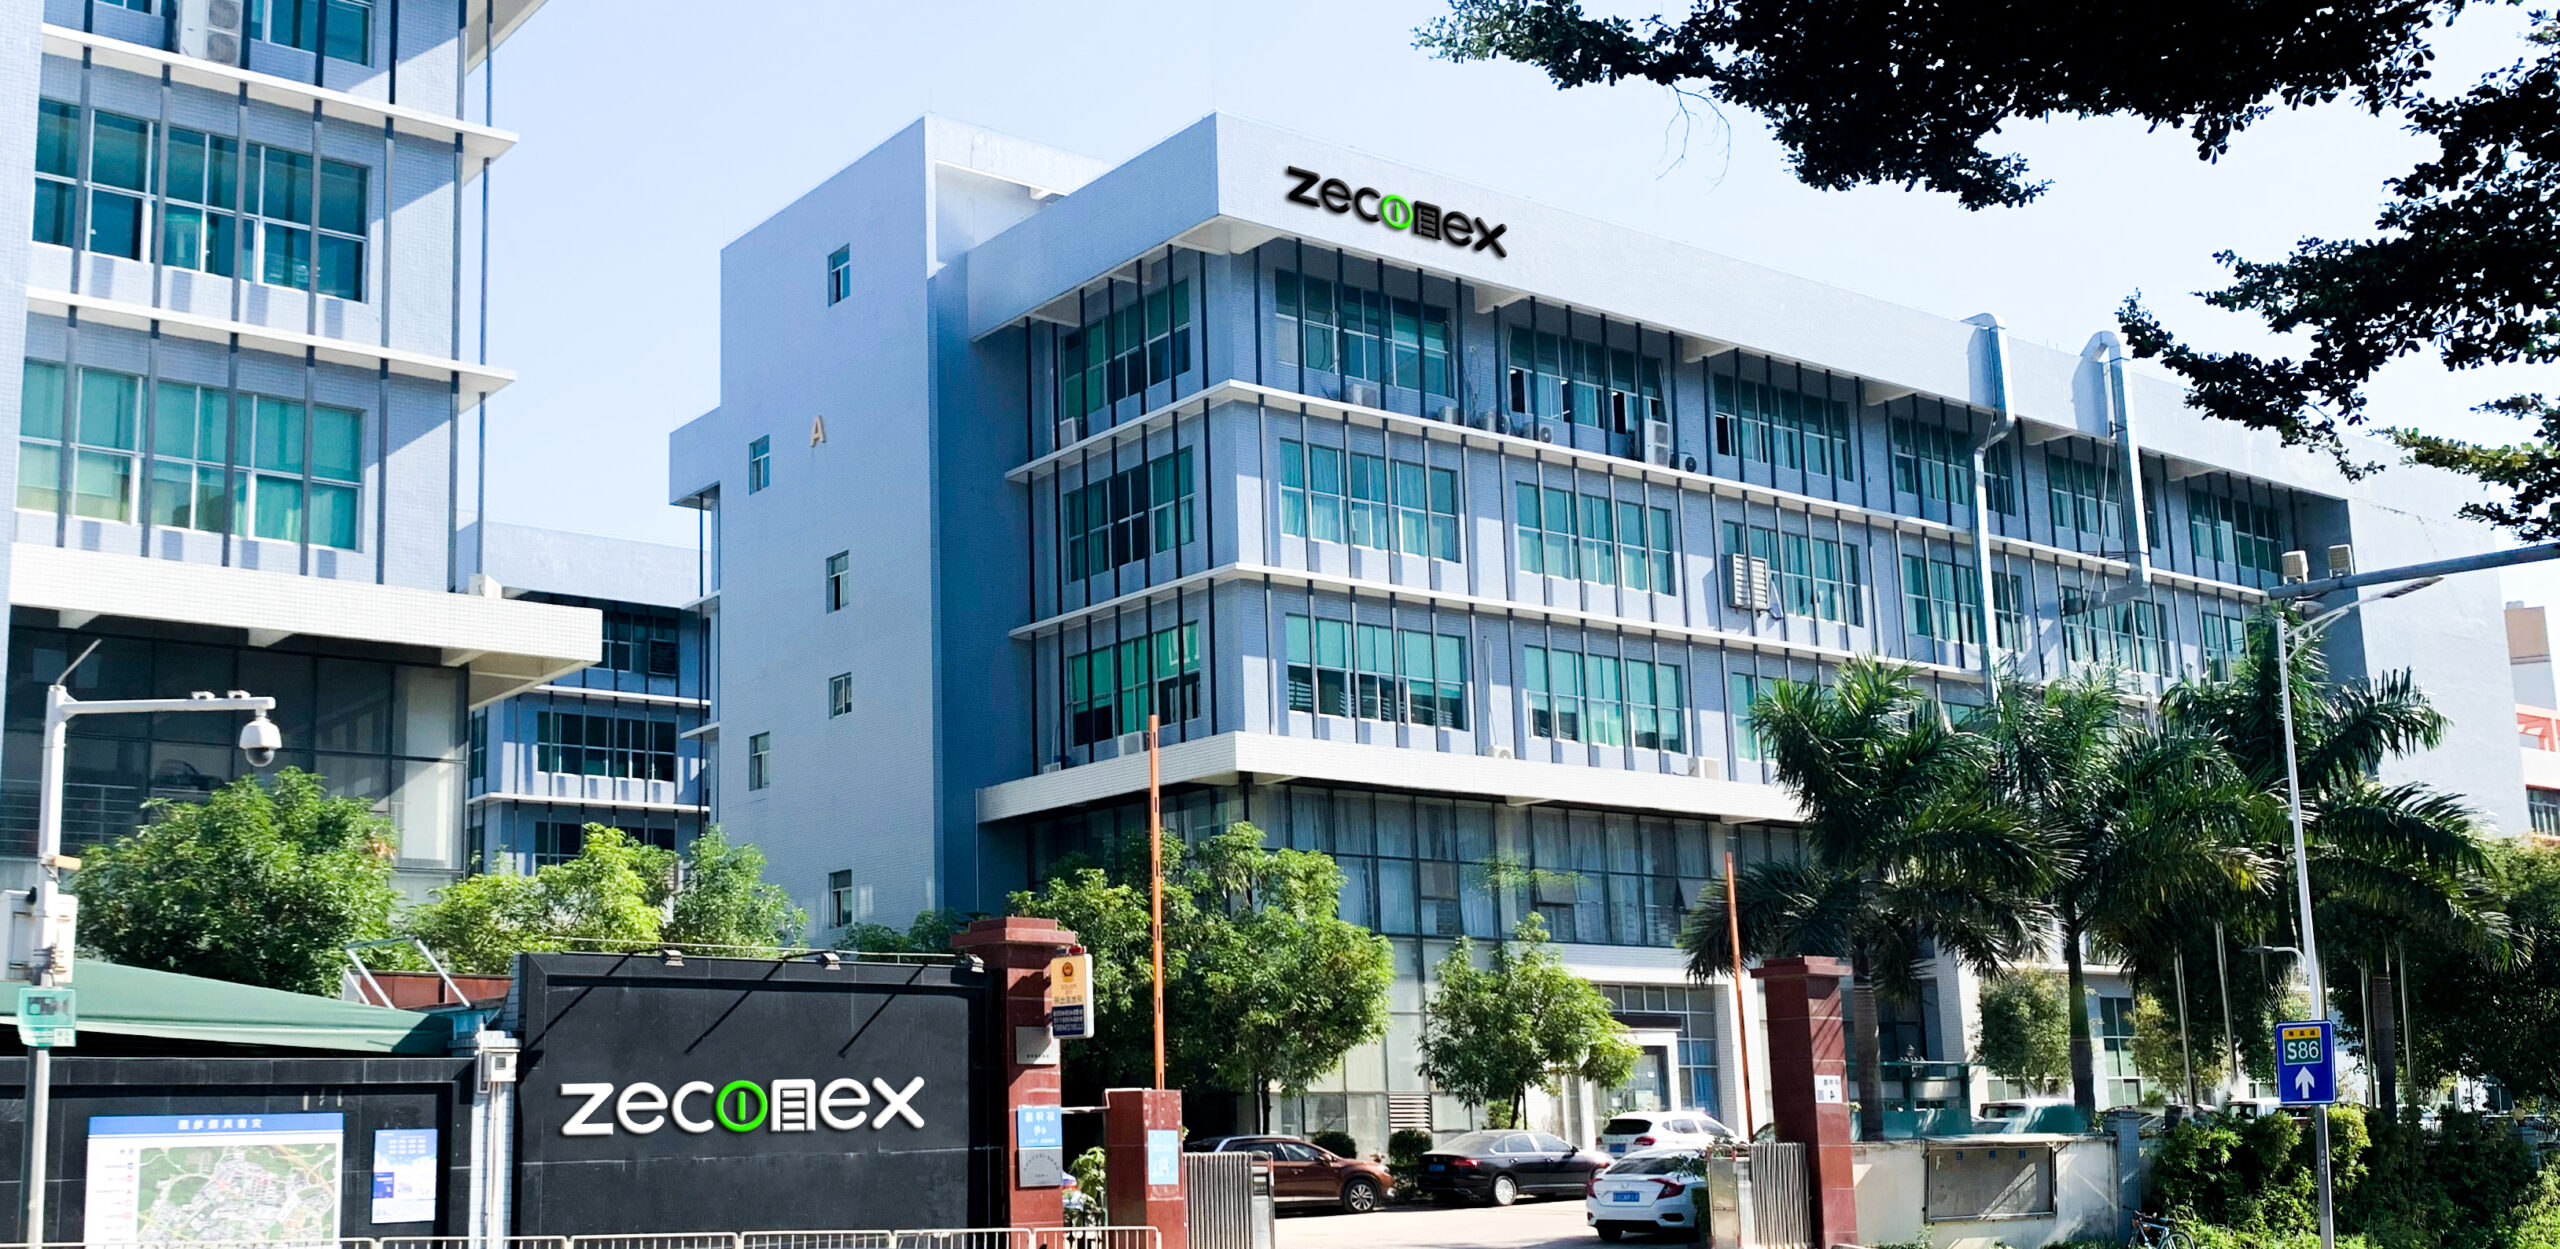 Zeconex factory